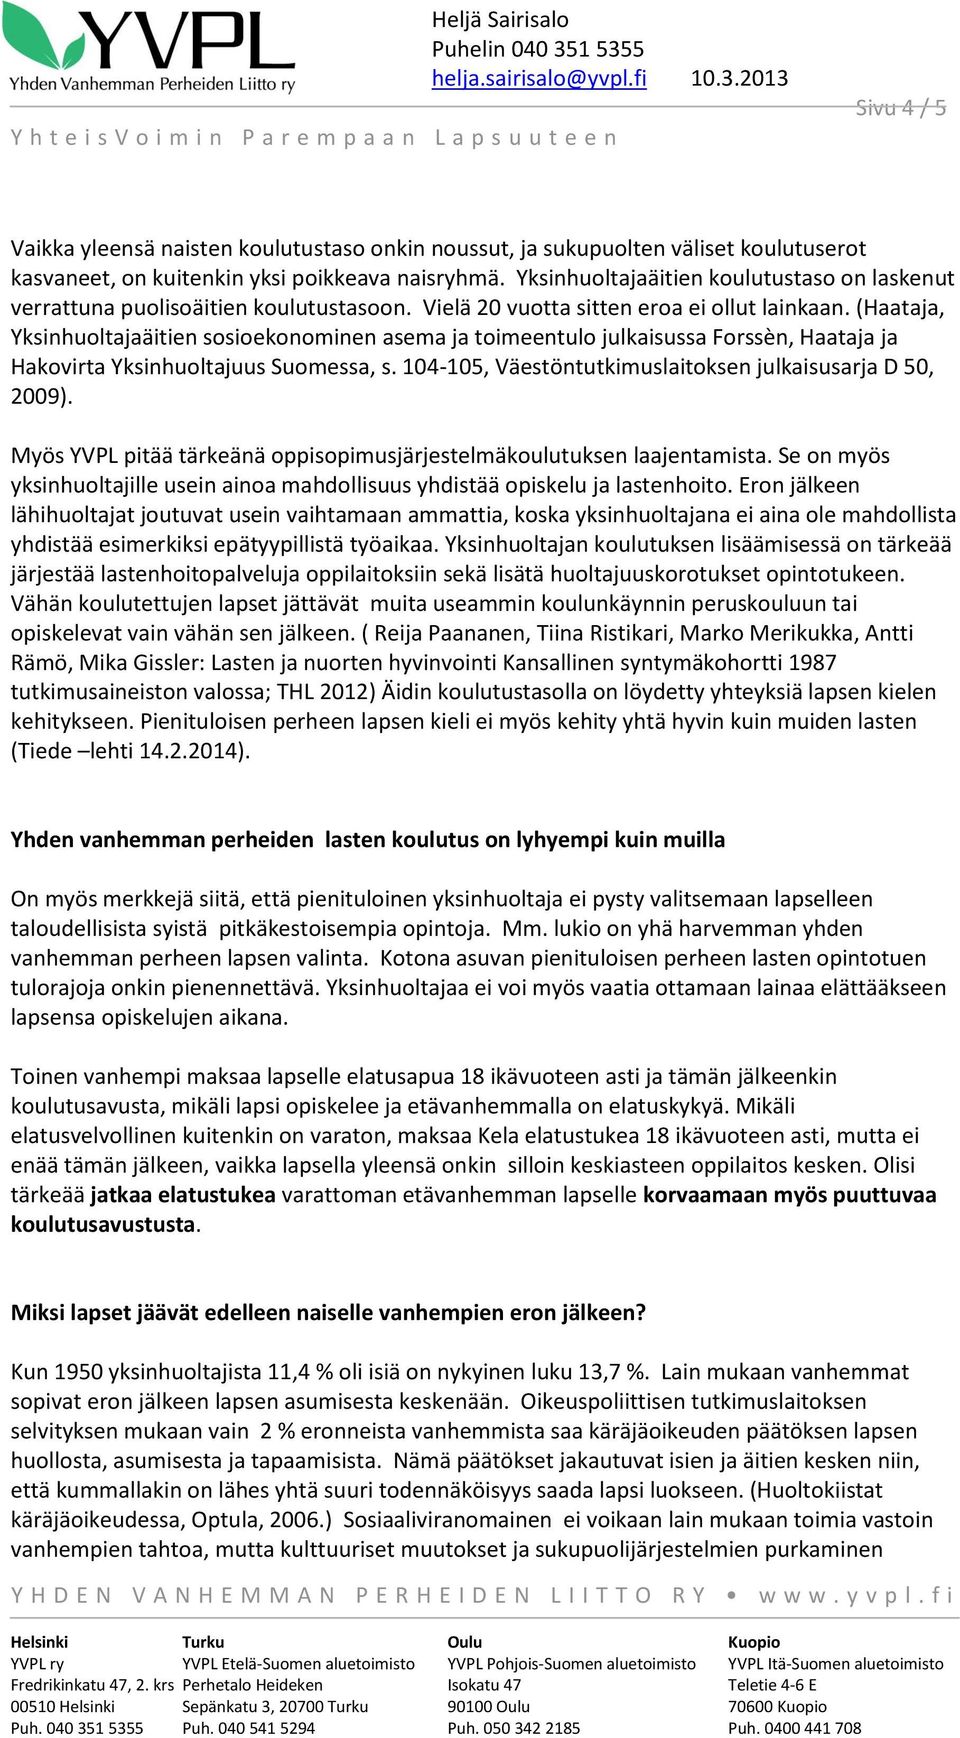 (Haataja, Yksinhuoltajaäitien sosioekonominen asema ja toimeentulo julkaisussa Forssèn, Haataja ja Hakovirta Yksinhuoltajuus Suomessa, s. 104-105, Väestöntutkimuslaitoksen julkaisusarja D 50, 2009).